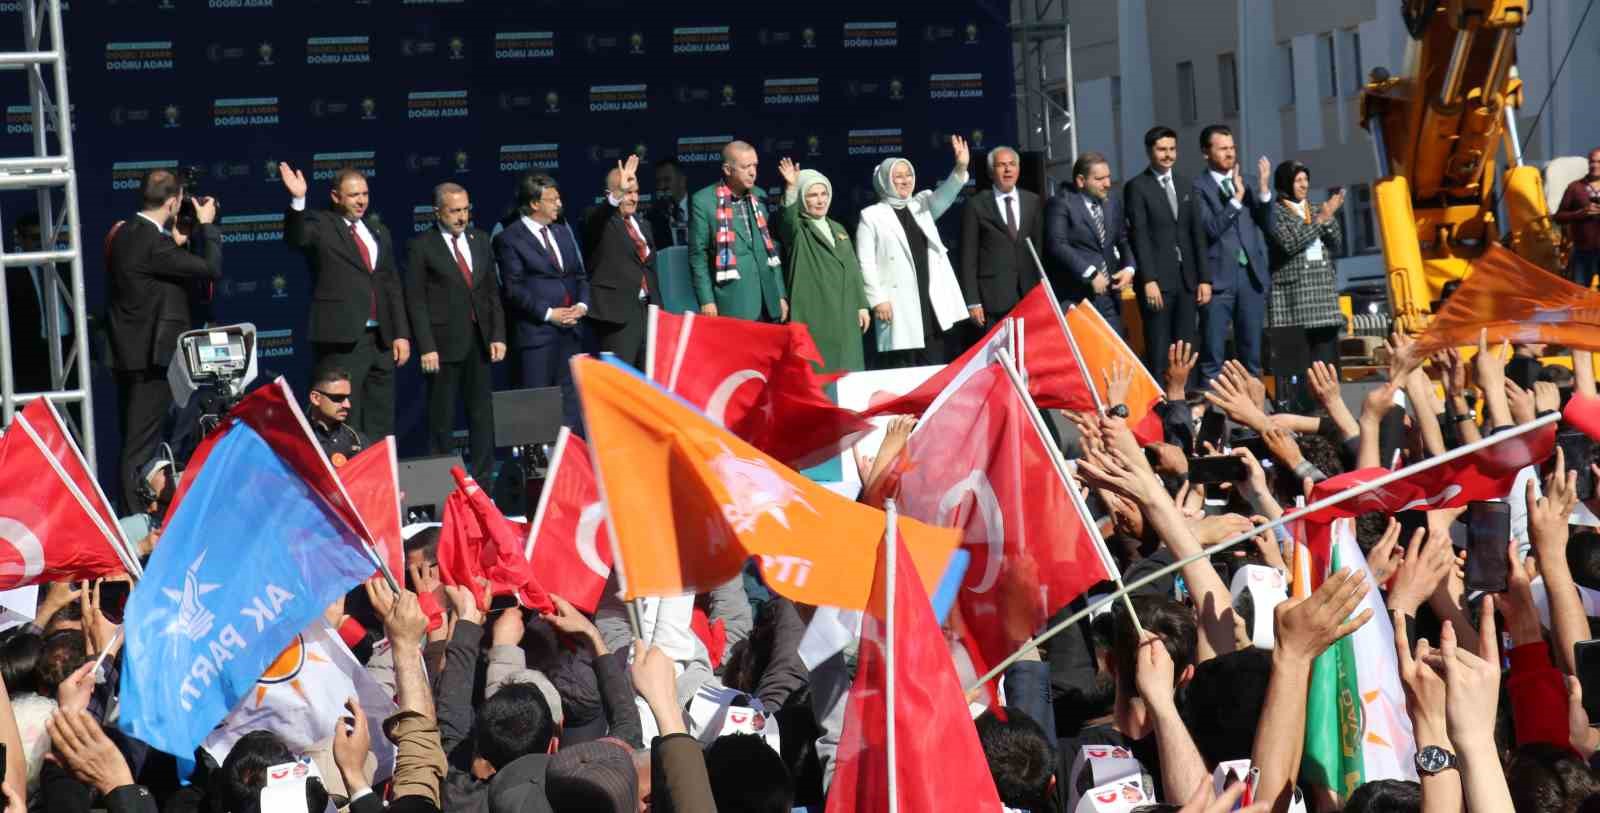 Cumhurbaşkanı Erdoğan: “Bundan sonra Gabar terörle anılmayacak, petrol zenginliğiyle anılacak”